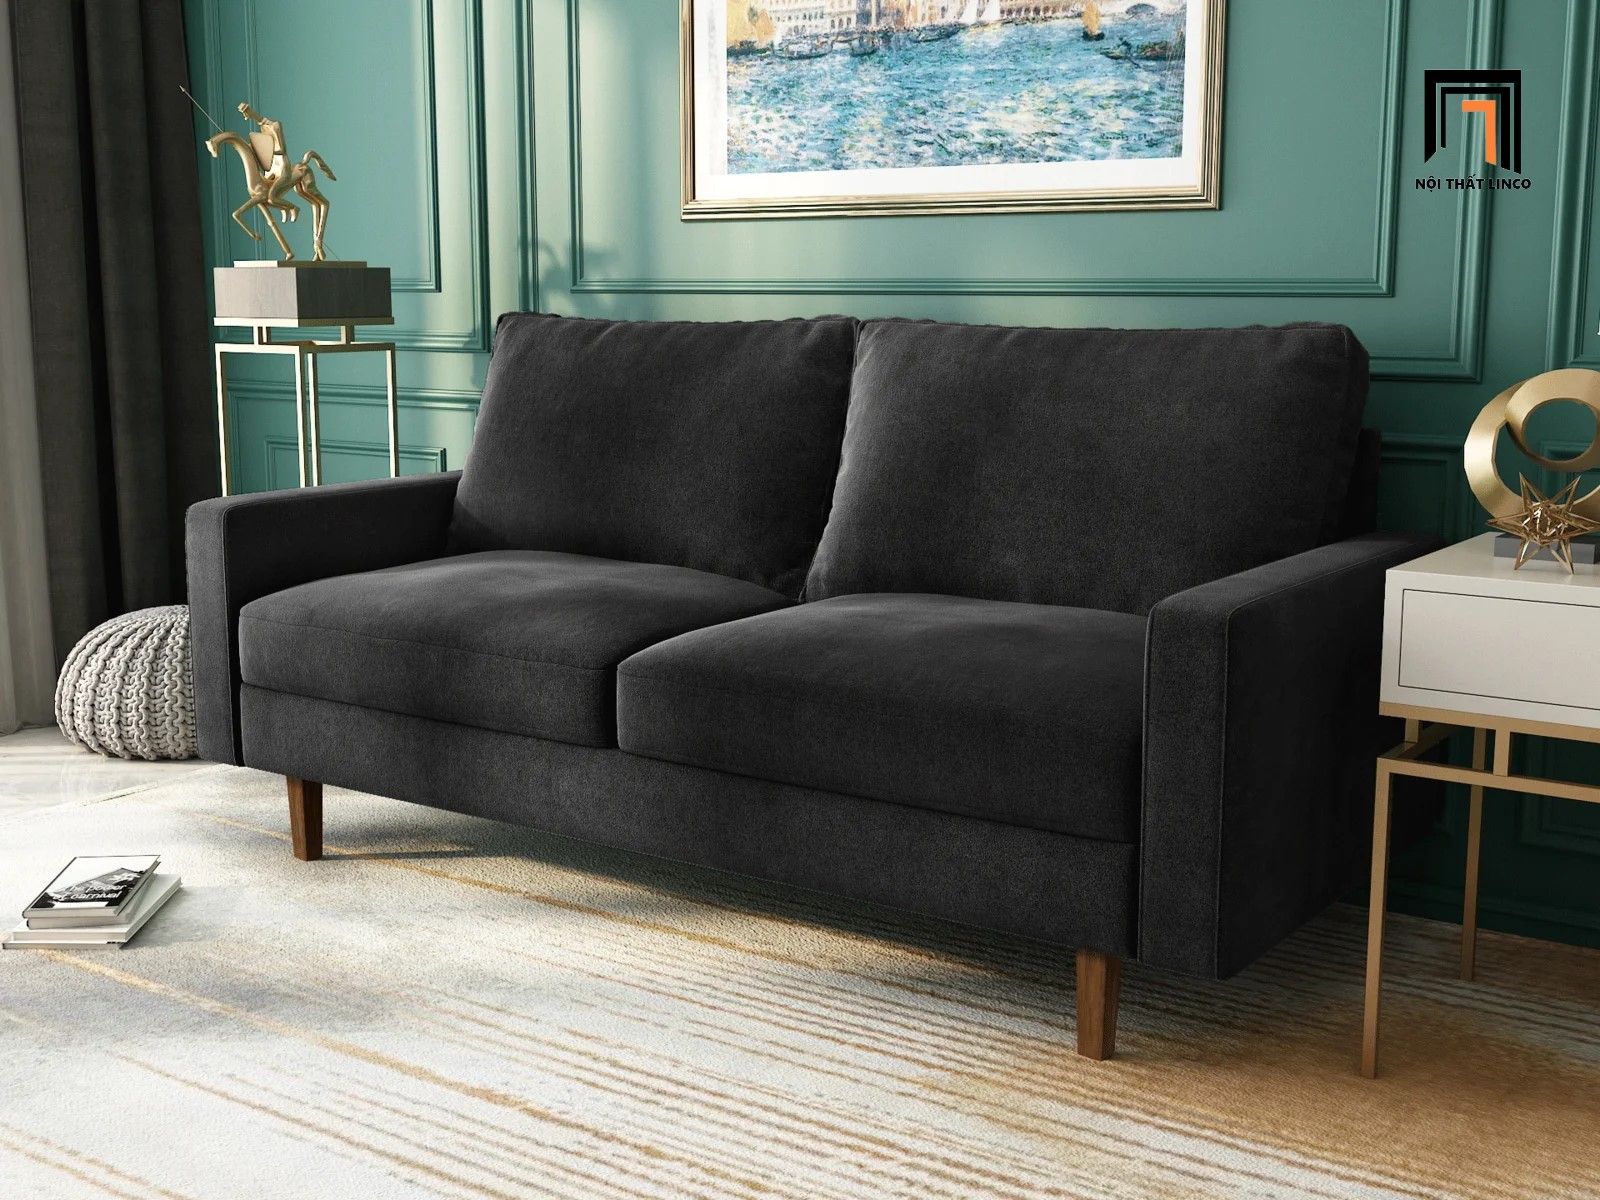  Ghế sofa văng giá rẻ BT221 Jo dài 1m6 vải nhung màu xanh dương 